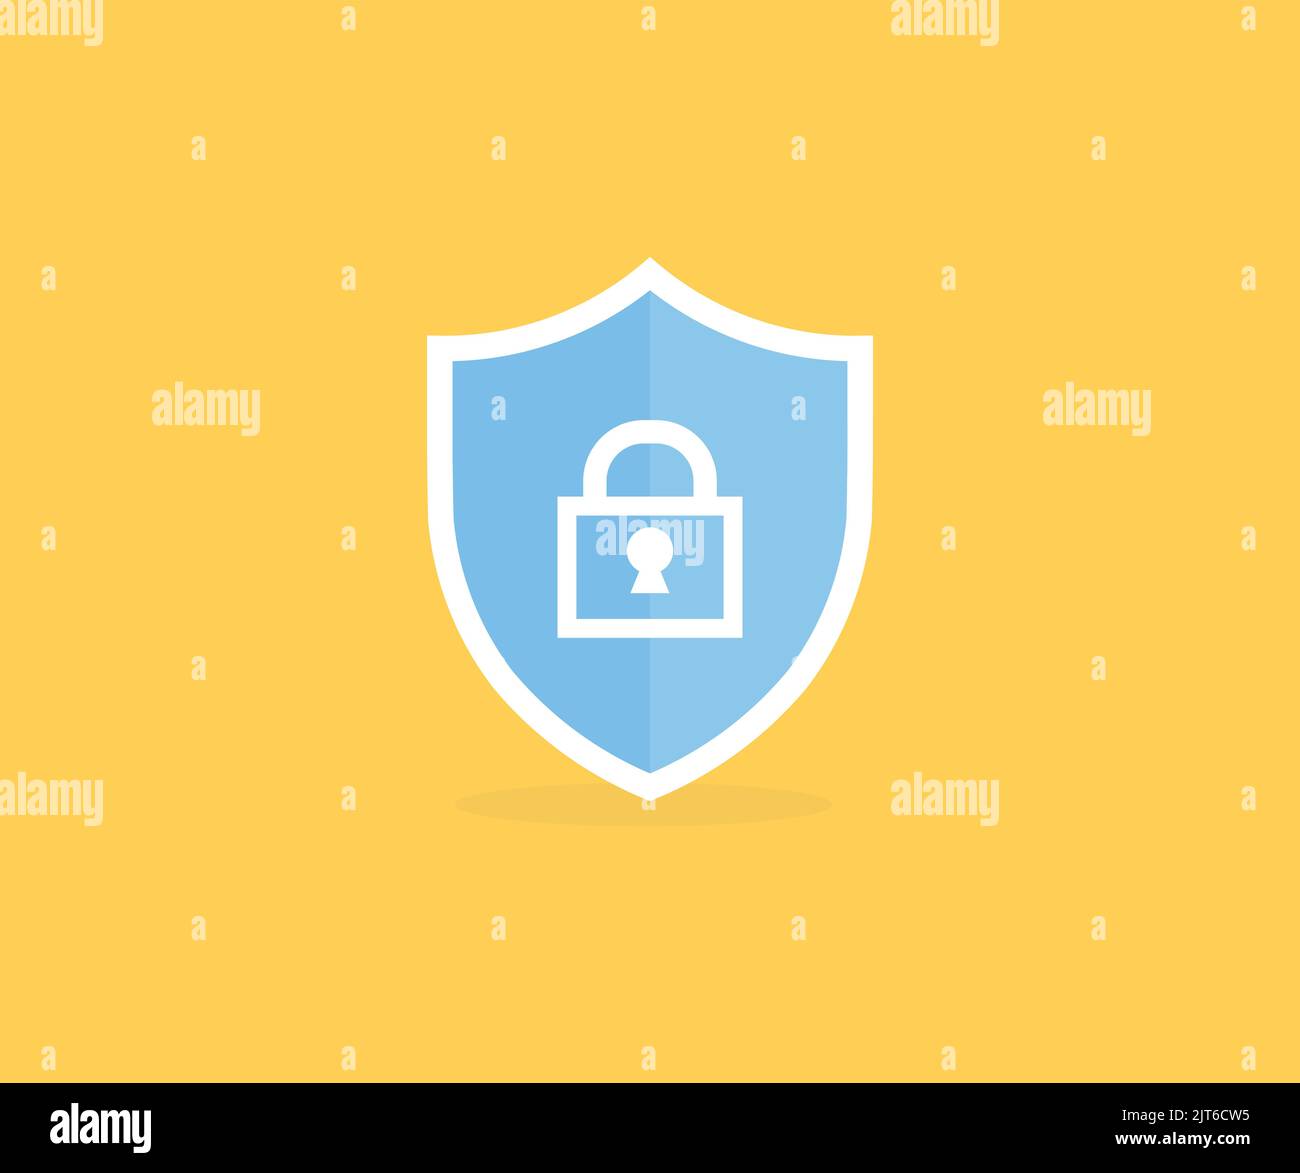 Concetto di sicurezza, lucchetto, design del logo Cyber Security Data Protection. Protezione dei dati e disegno e illustrazione del vettore di accesso sicuro a Internet. Illustrazione Vettoriale